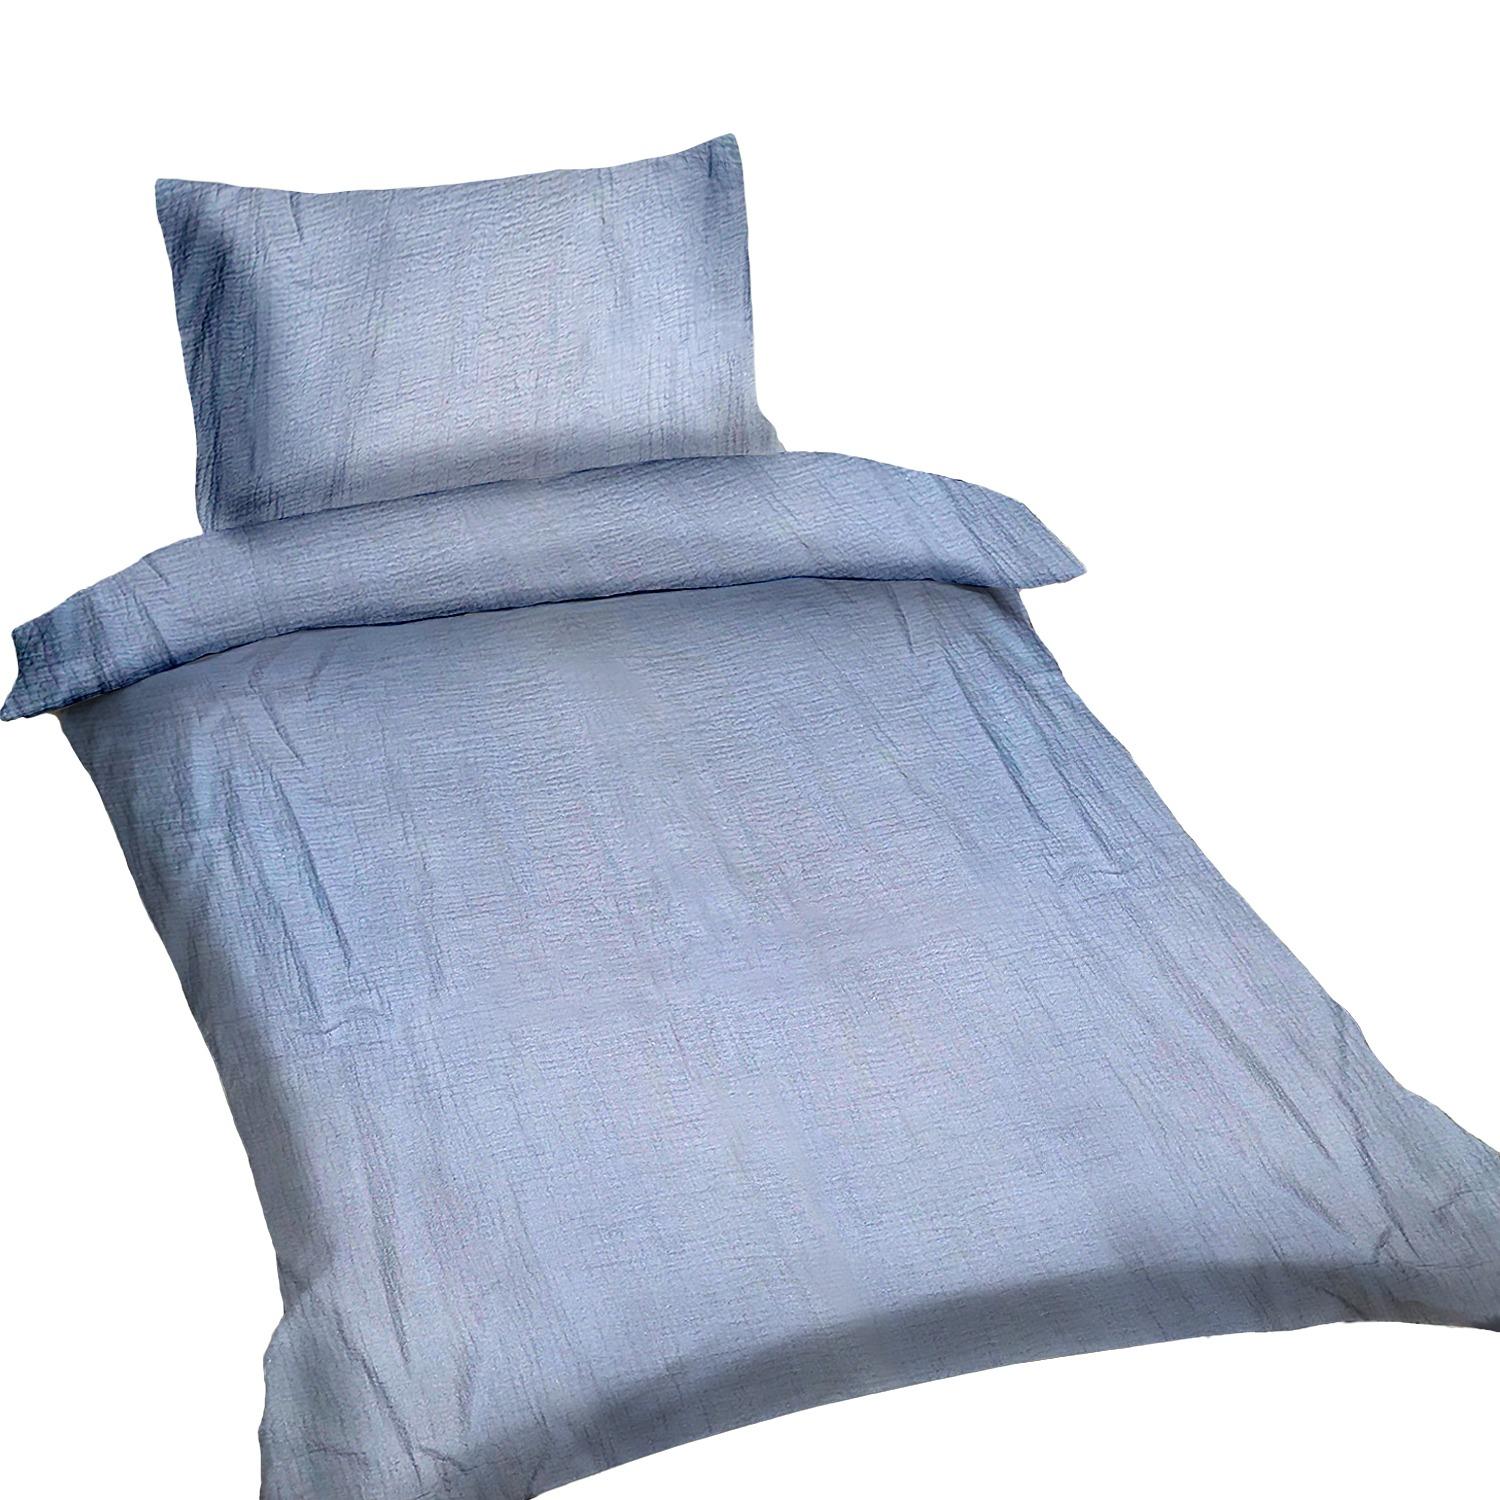 Muslin children's bedding set 90x120cm - light blue